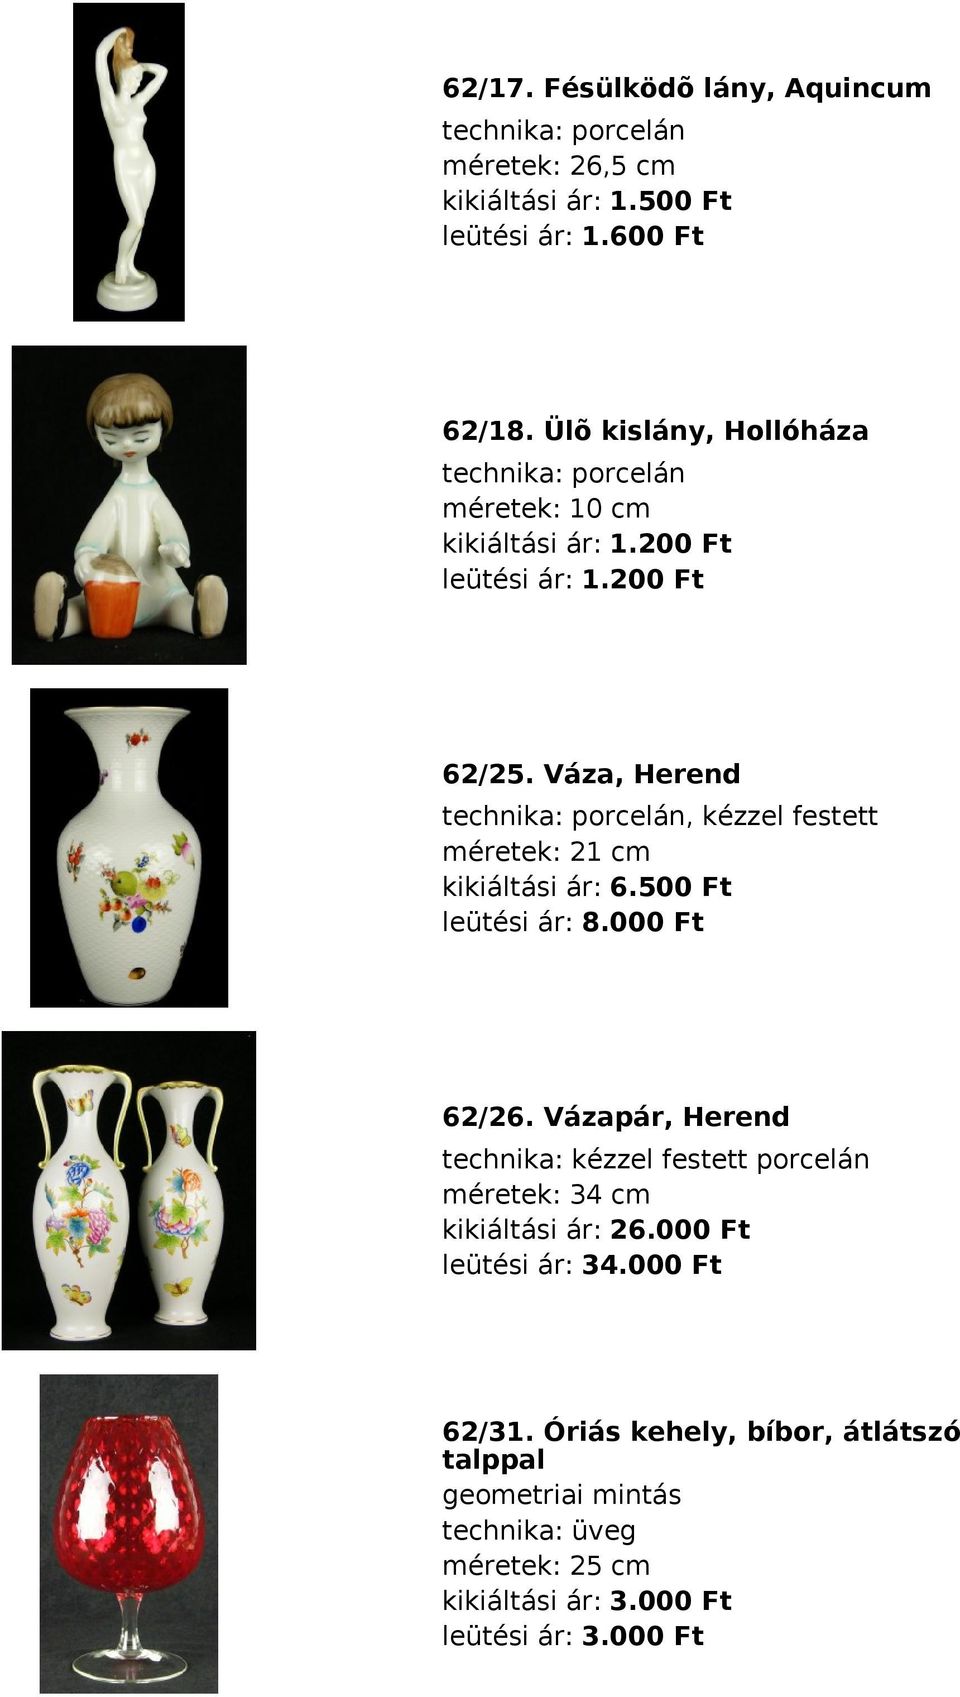 Váza, Herend porcelán, kézzel festett méretek: 21 cm kikiáltási ár: 6.500 Ft leütési ár: 8.000 Ft 62/26.